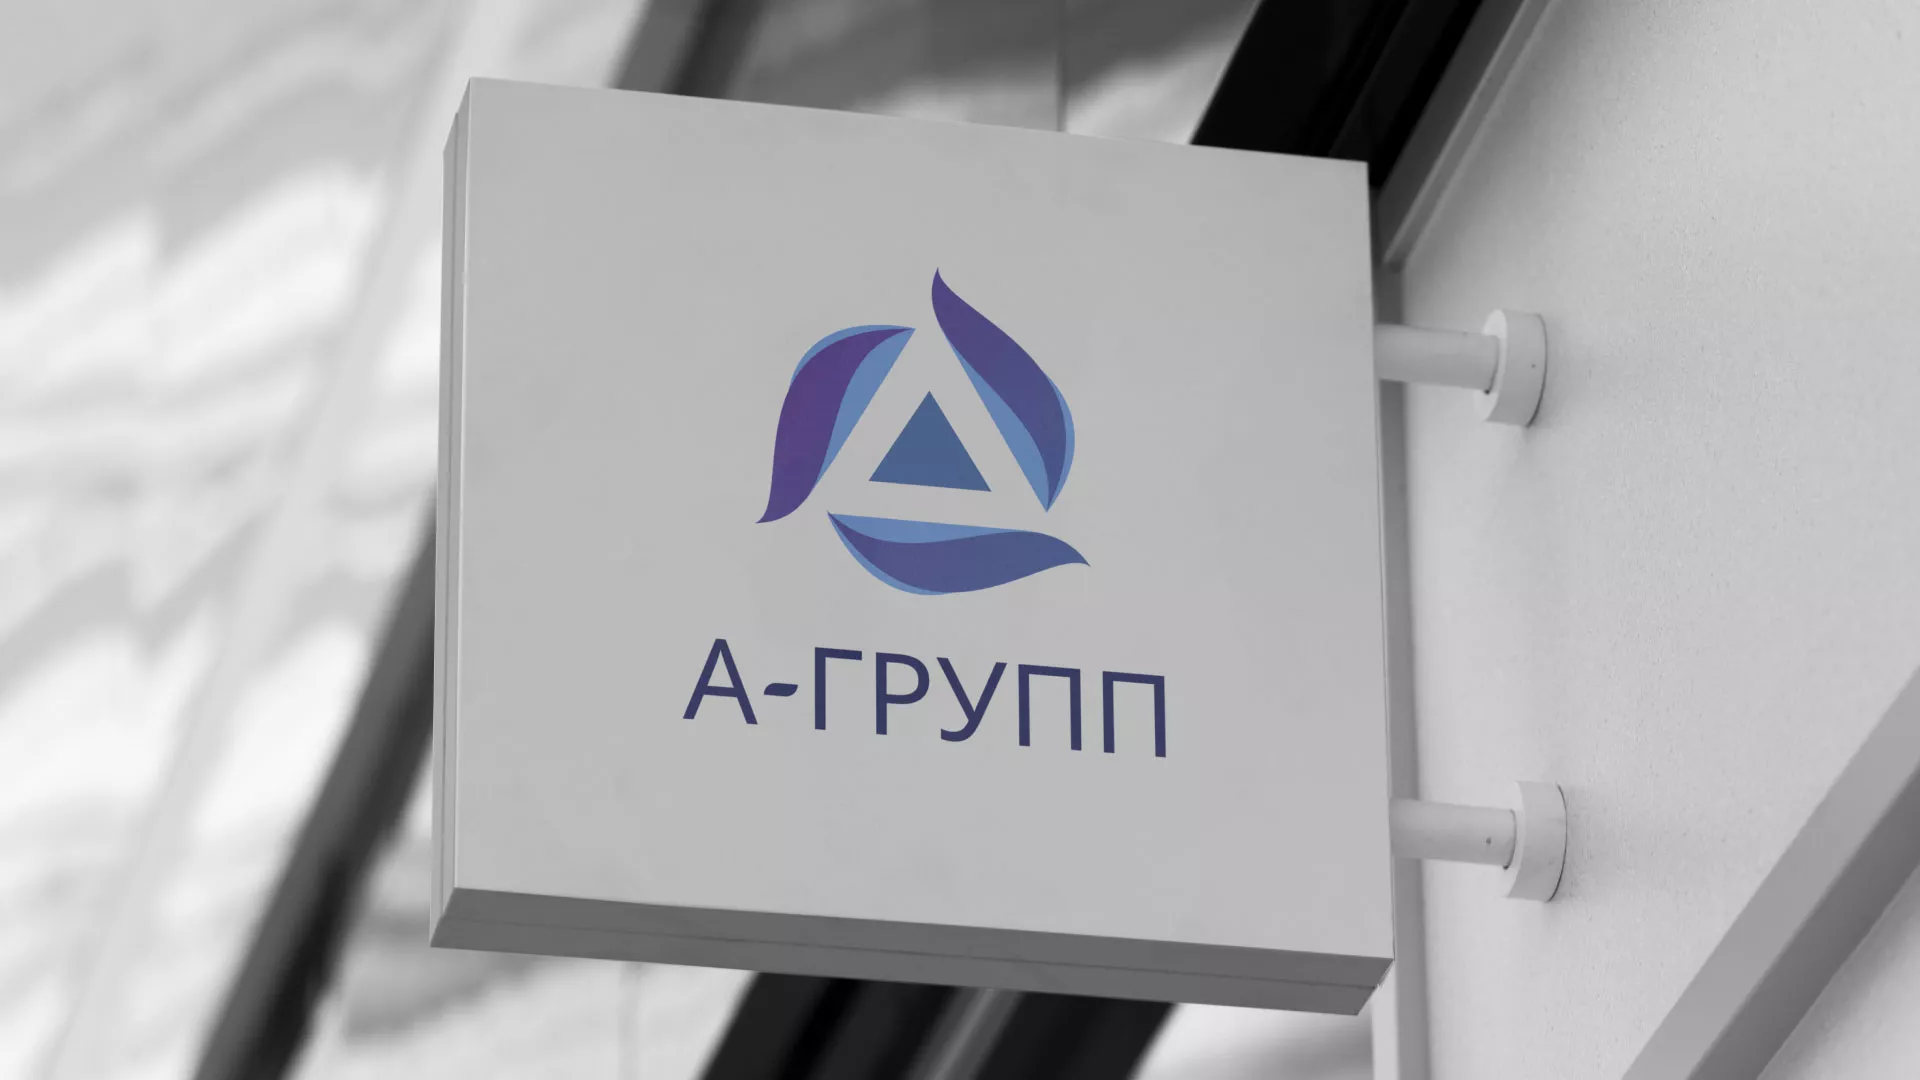 Создание логотипа компании «А-ГРУПП» в Астрахани